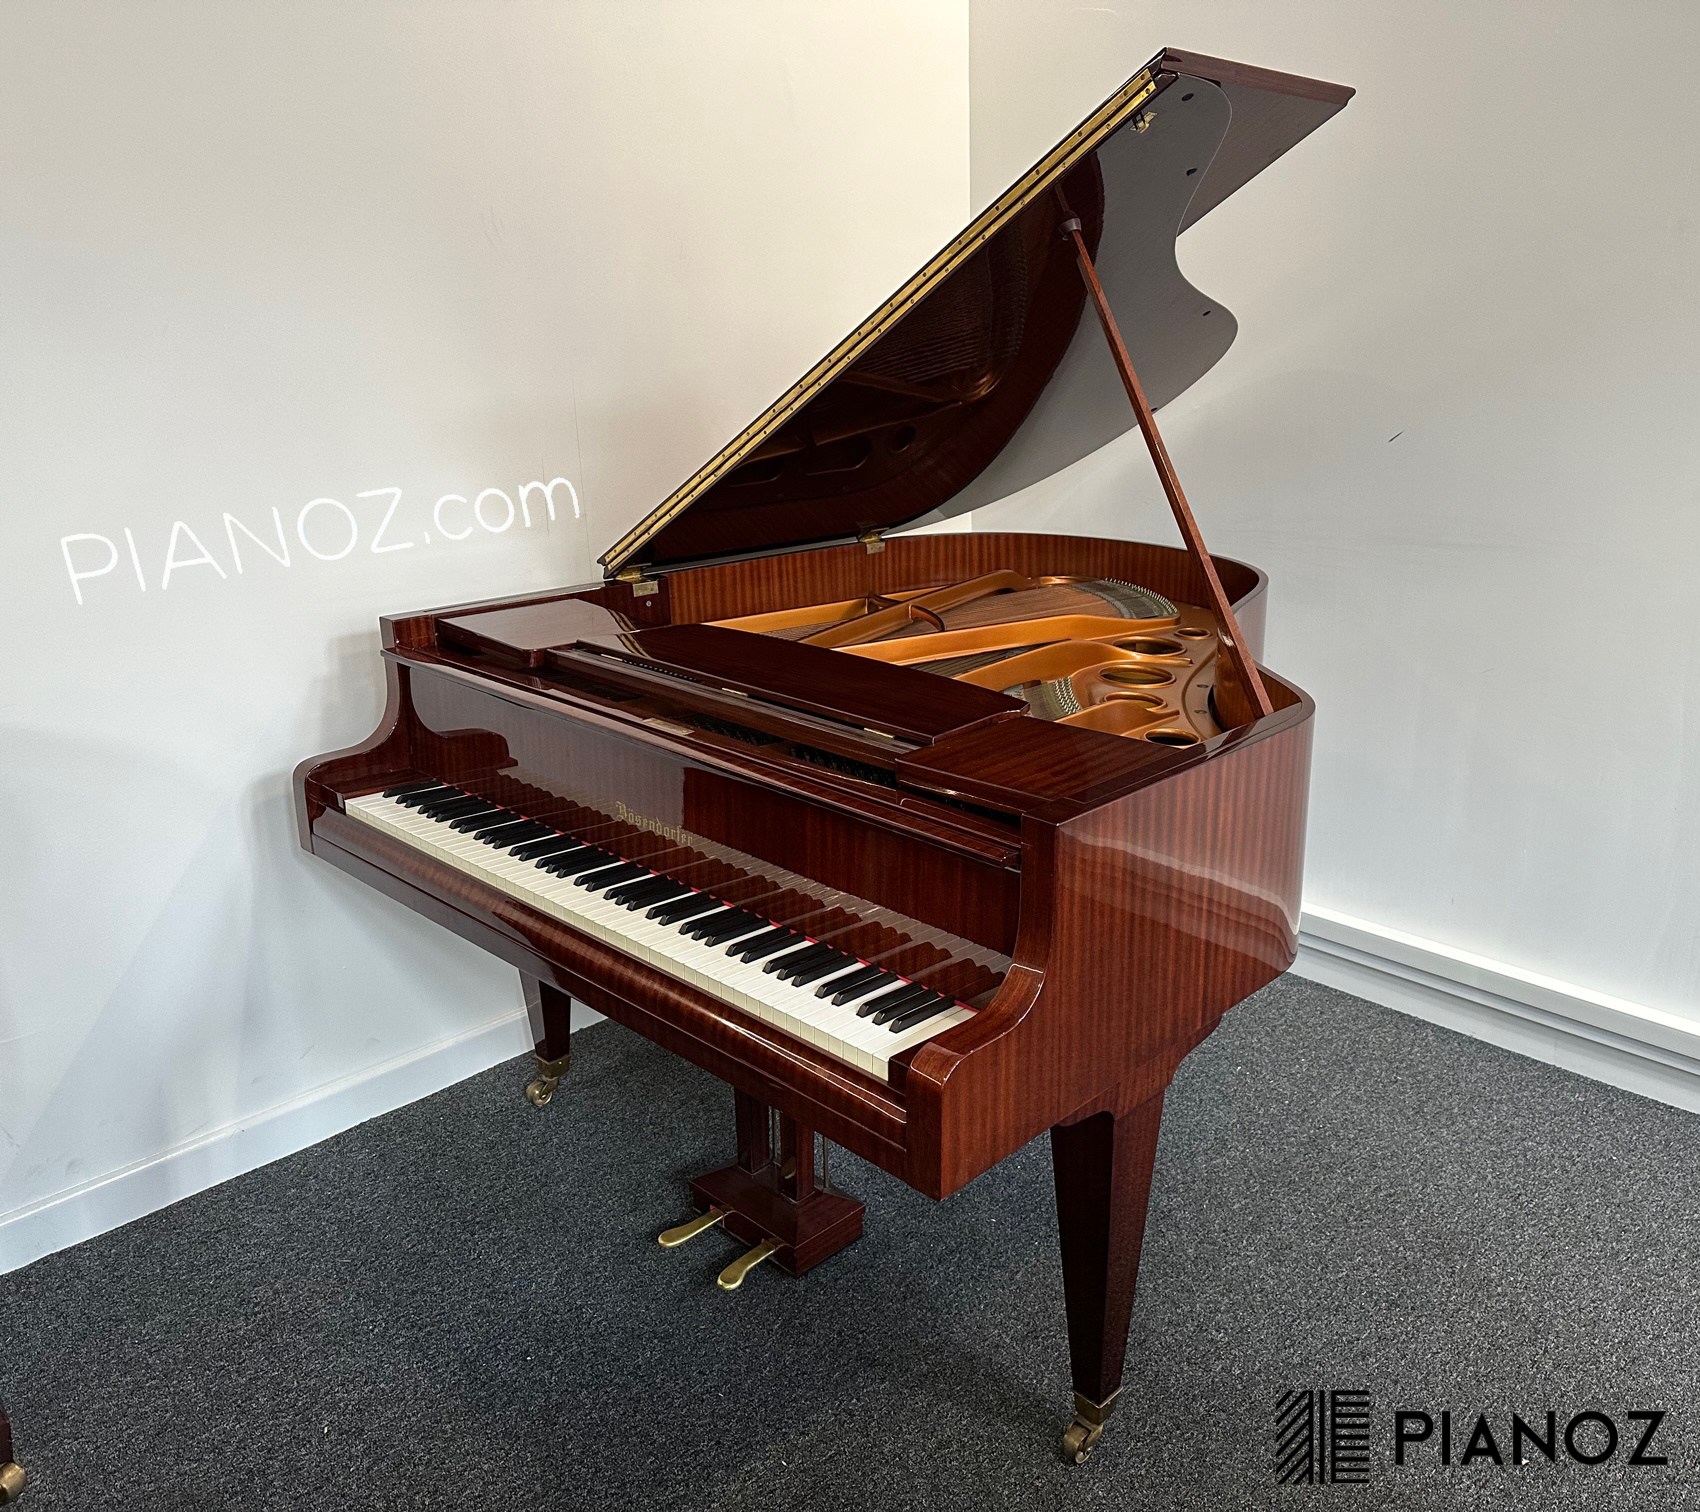 Bosendorfer 170 Baby Grand Piano piano for sale in UK